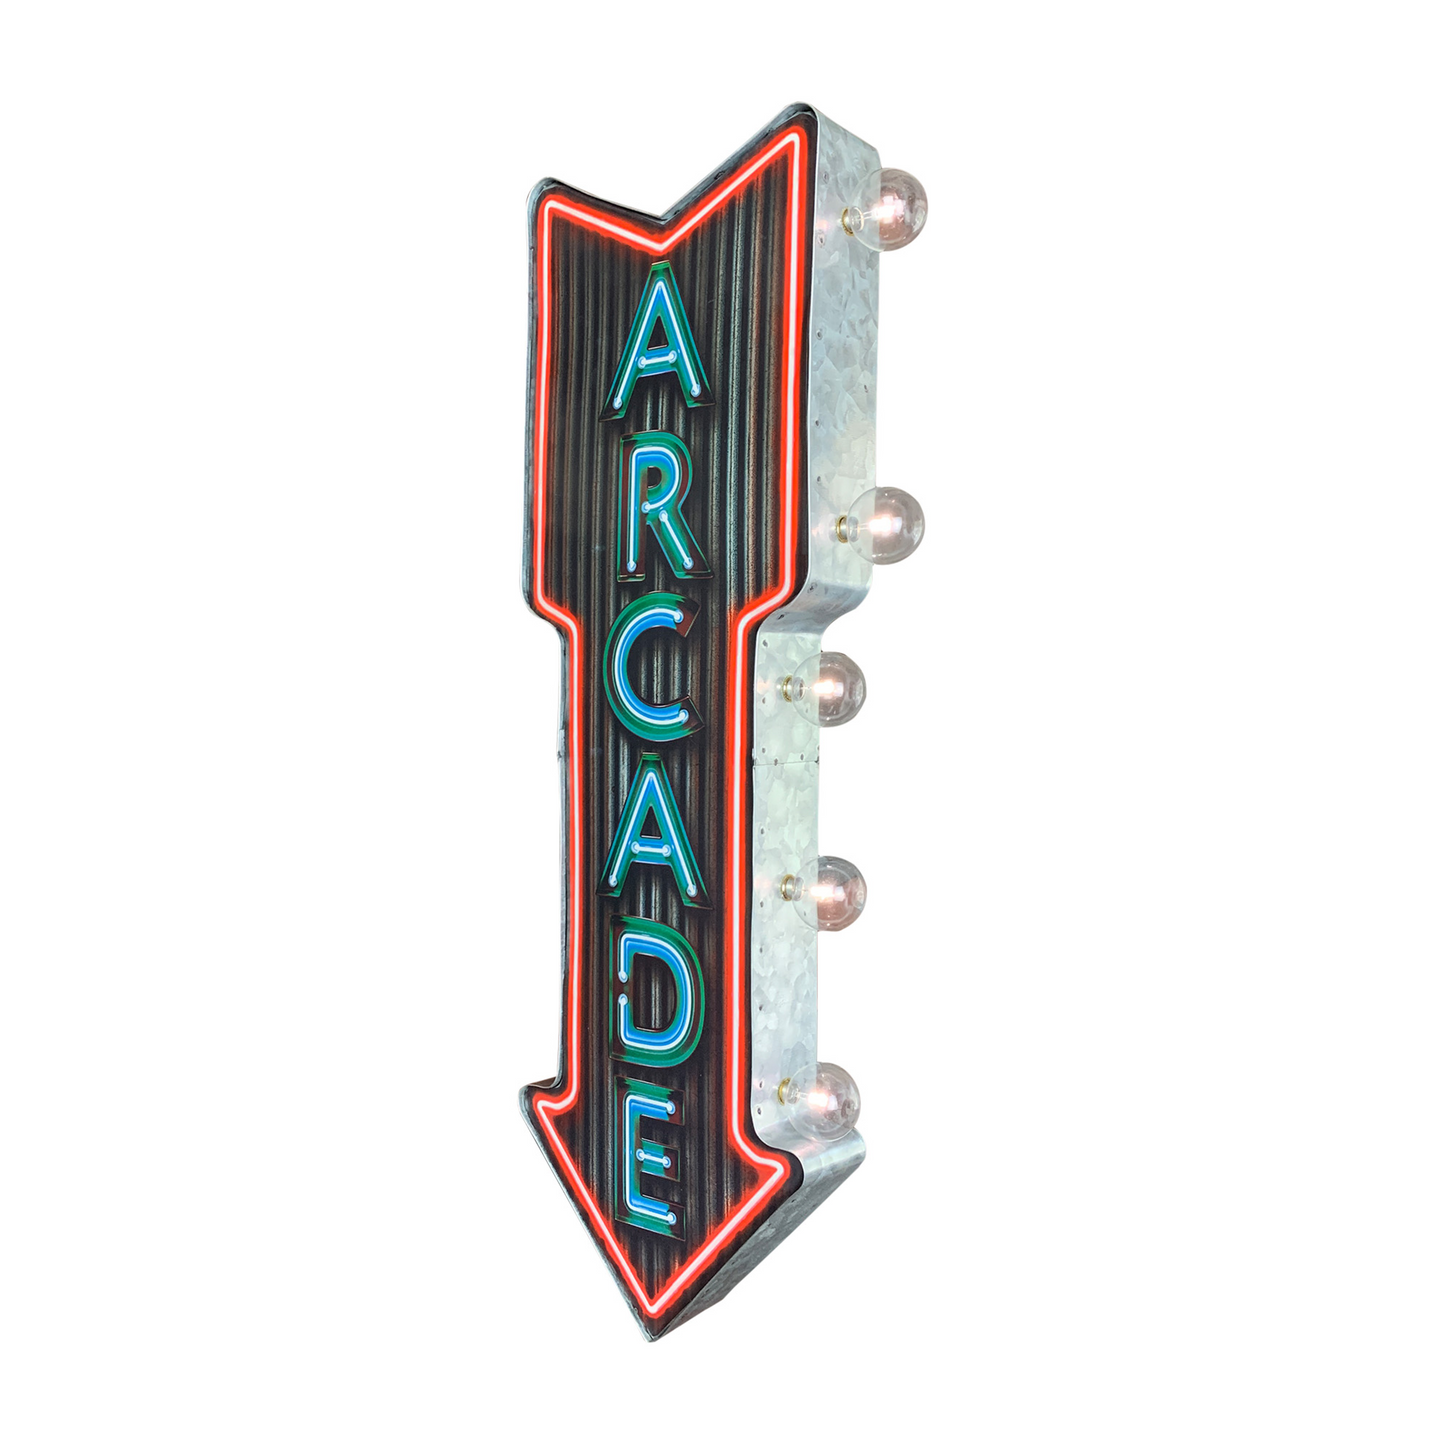 Arcade Neon Print LED Arrow Sign